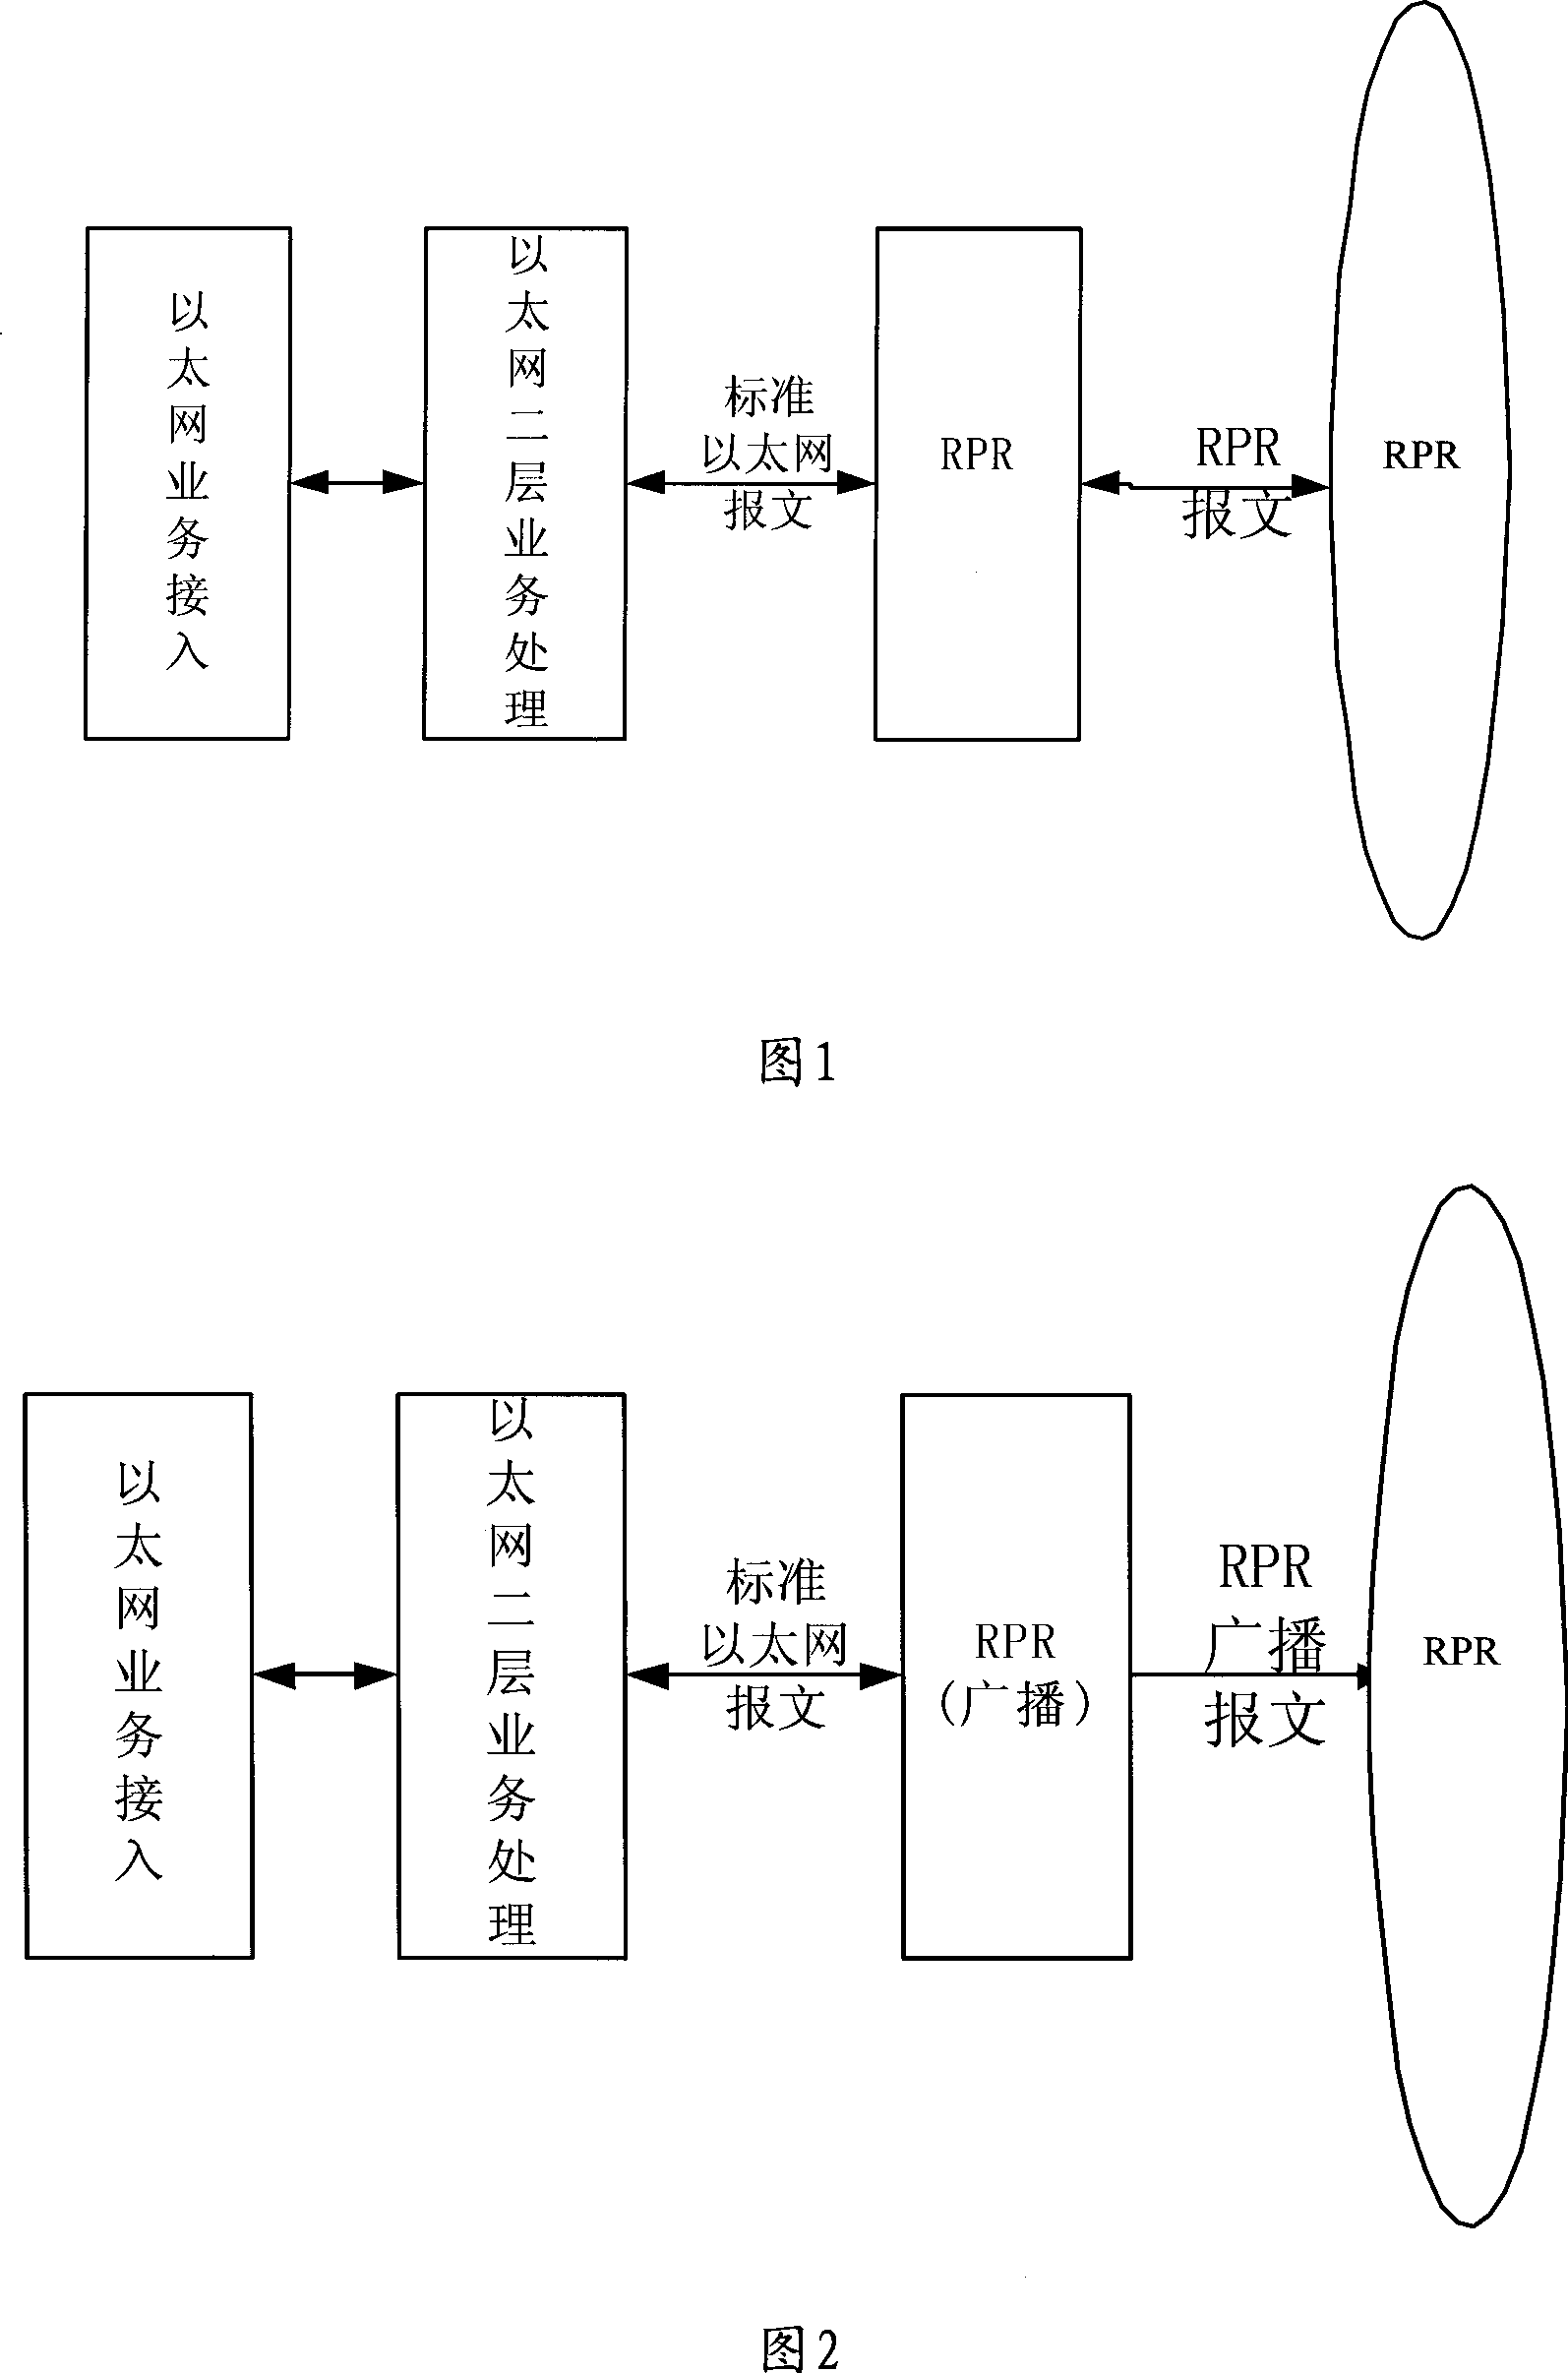 Ethernet data transmission method via RPR transmission